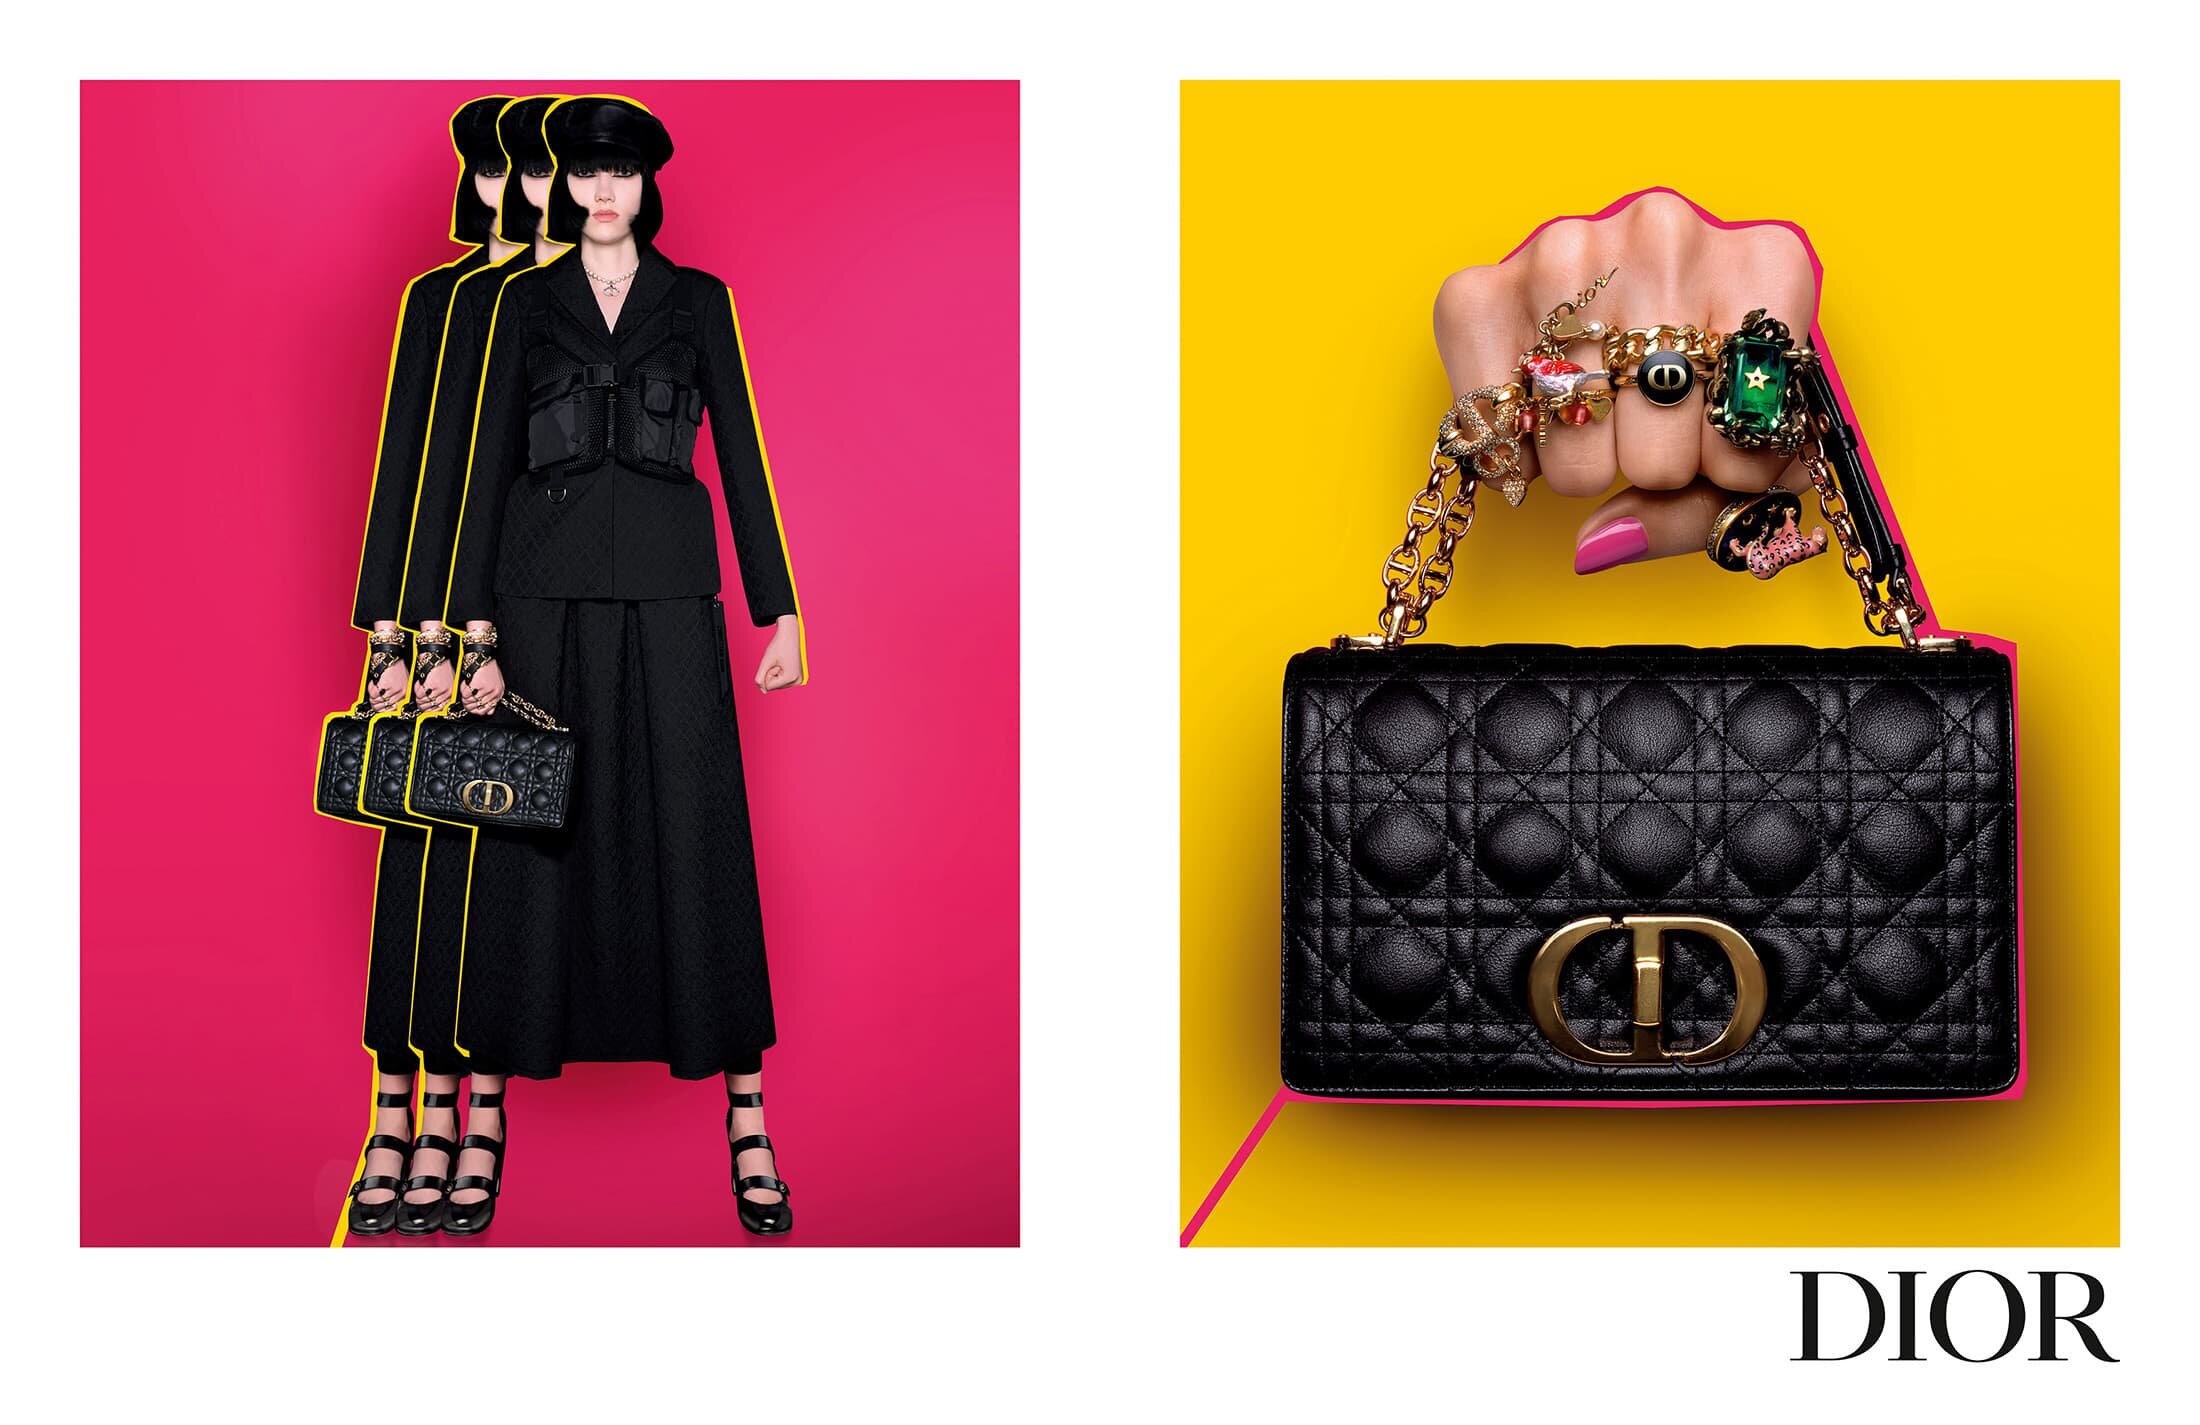 Brigitte Niedermair Dior Women Fall 2021 Campaign (5).jpg